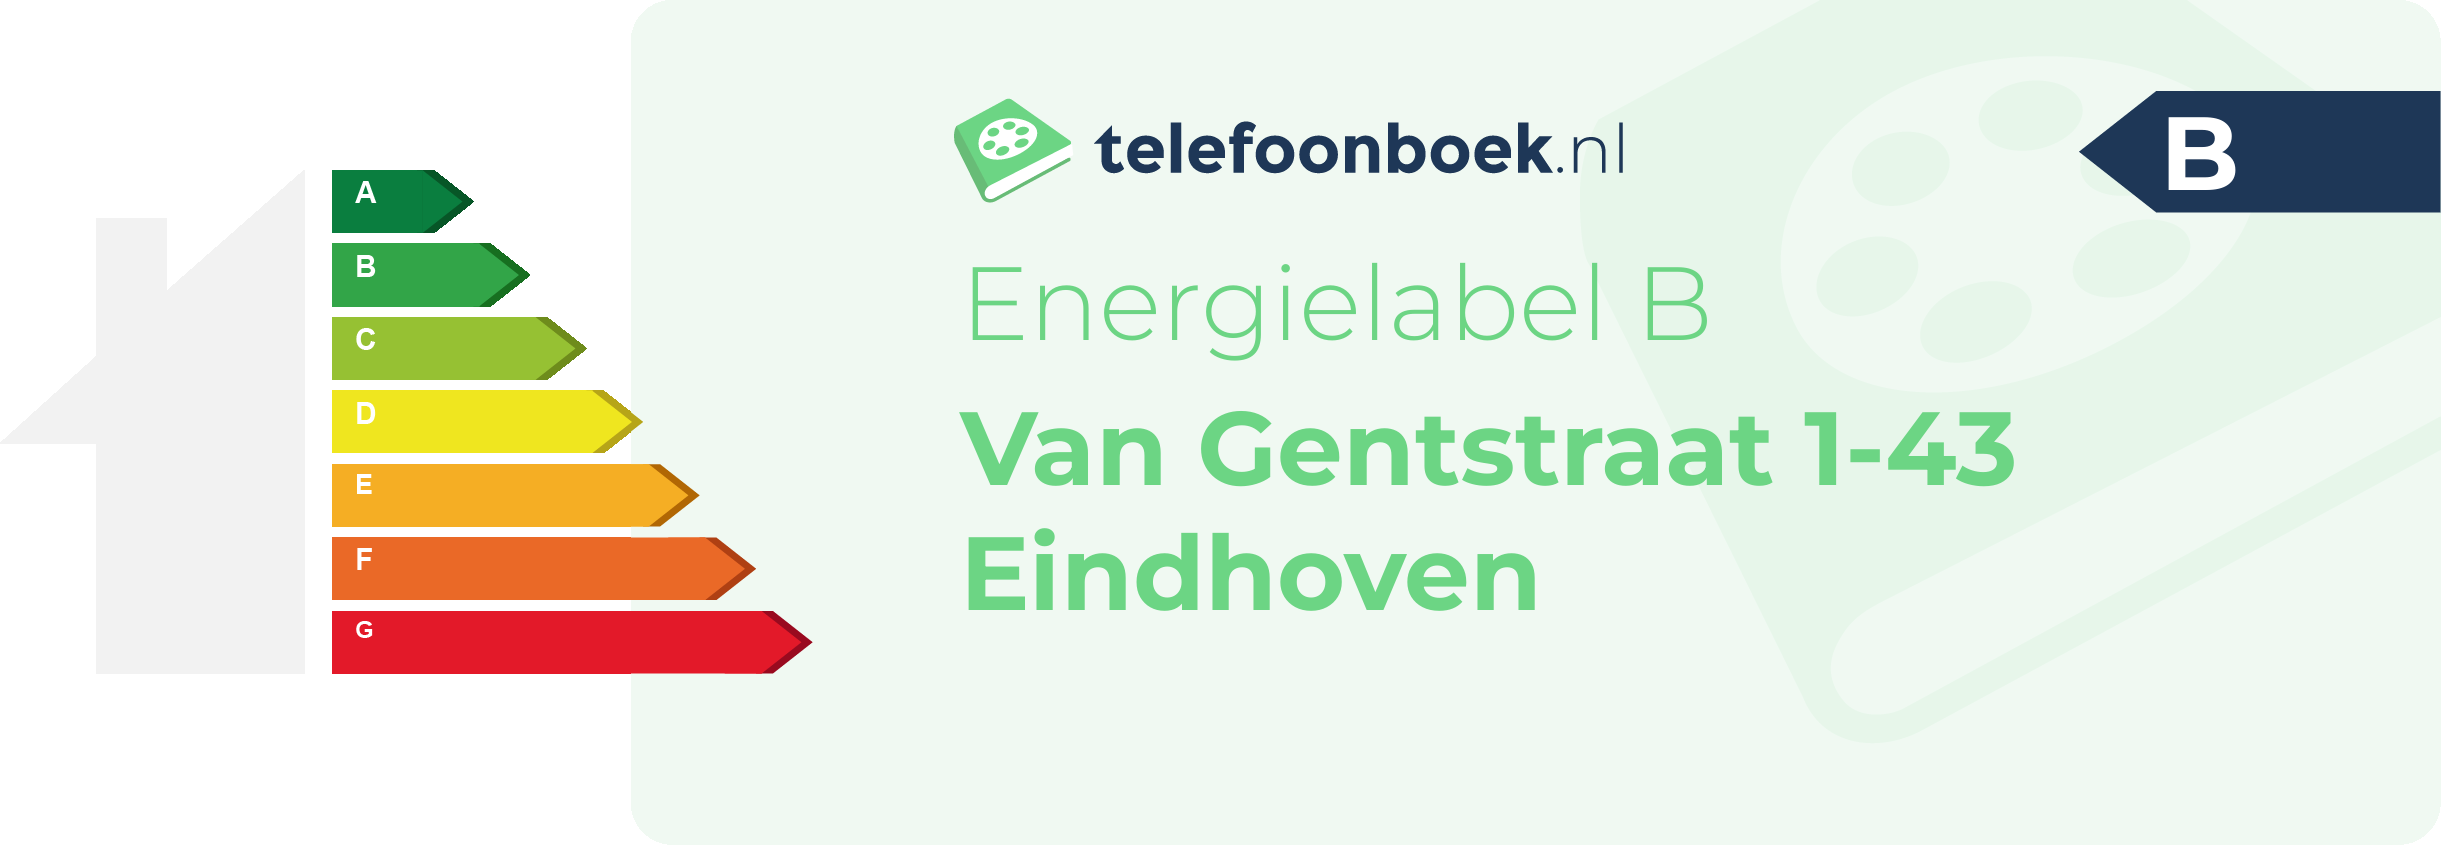 Energielabel Van Gentstraat 1-43 Eindhoven